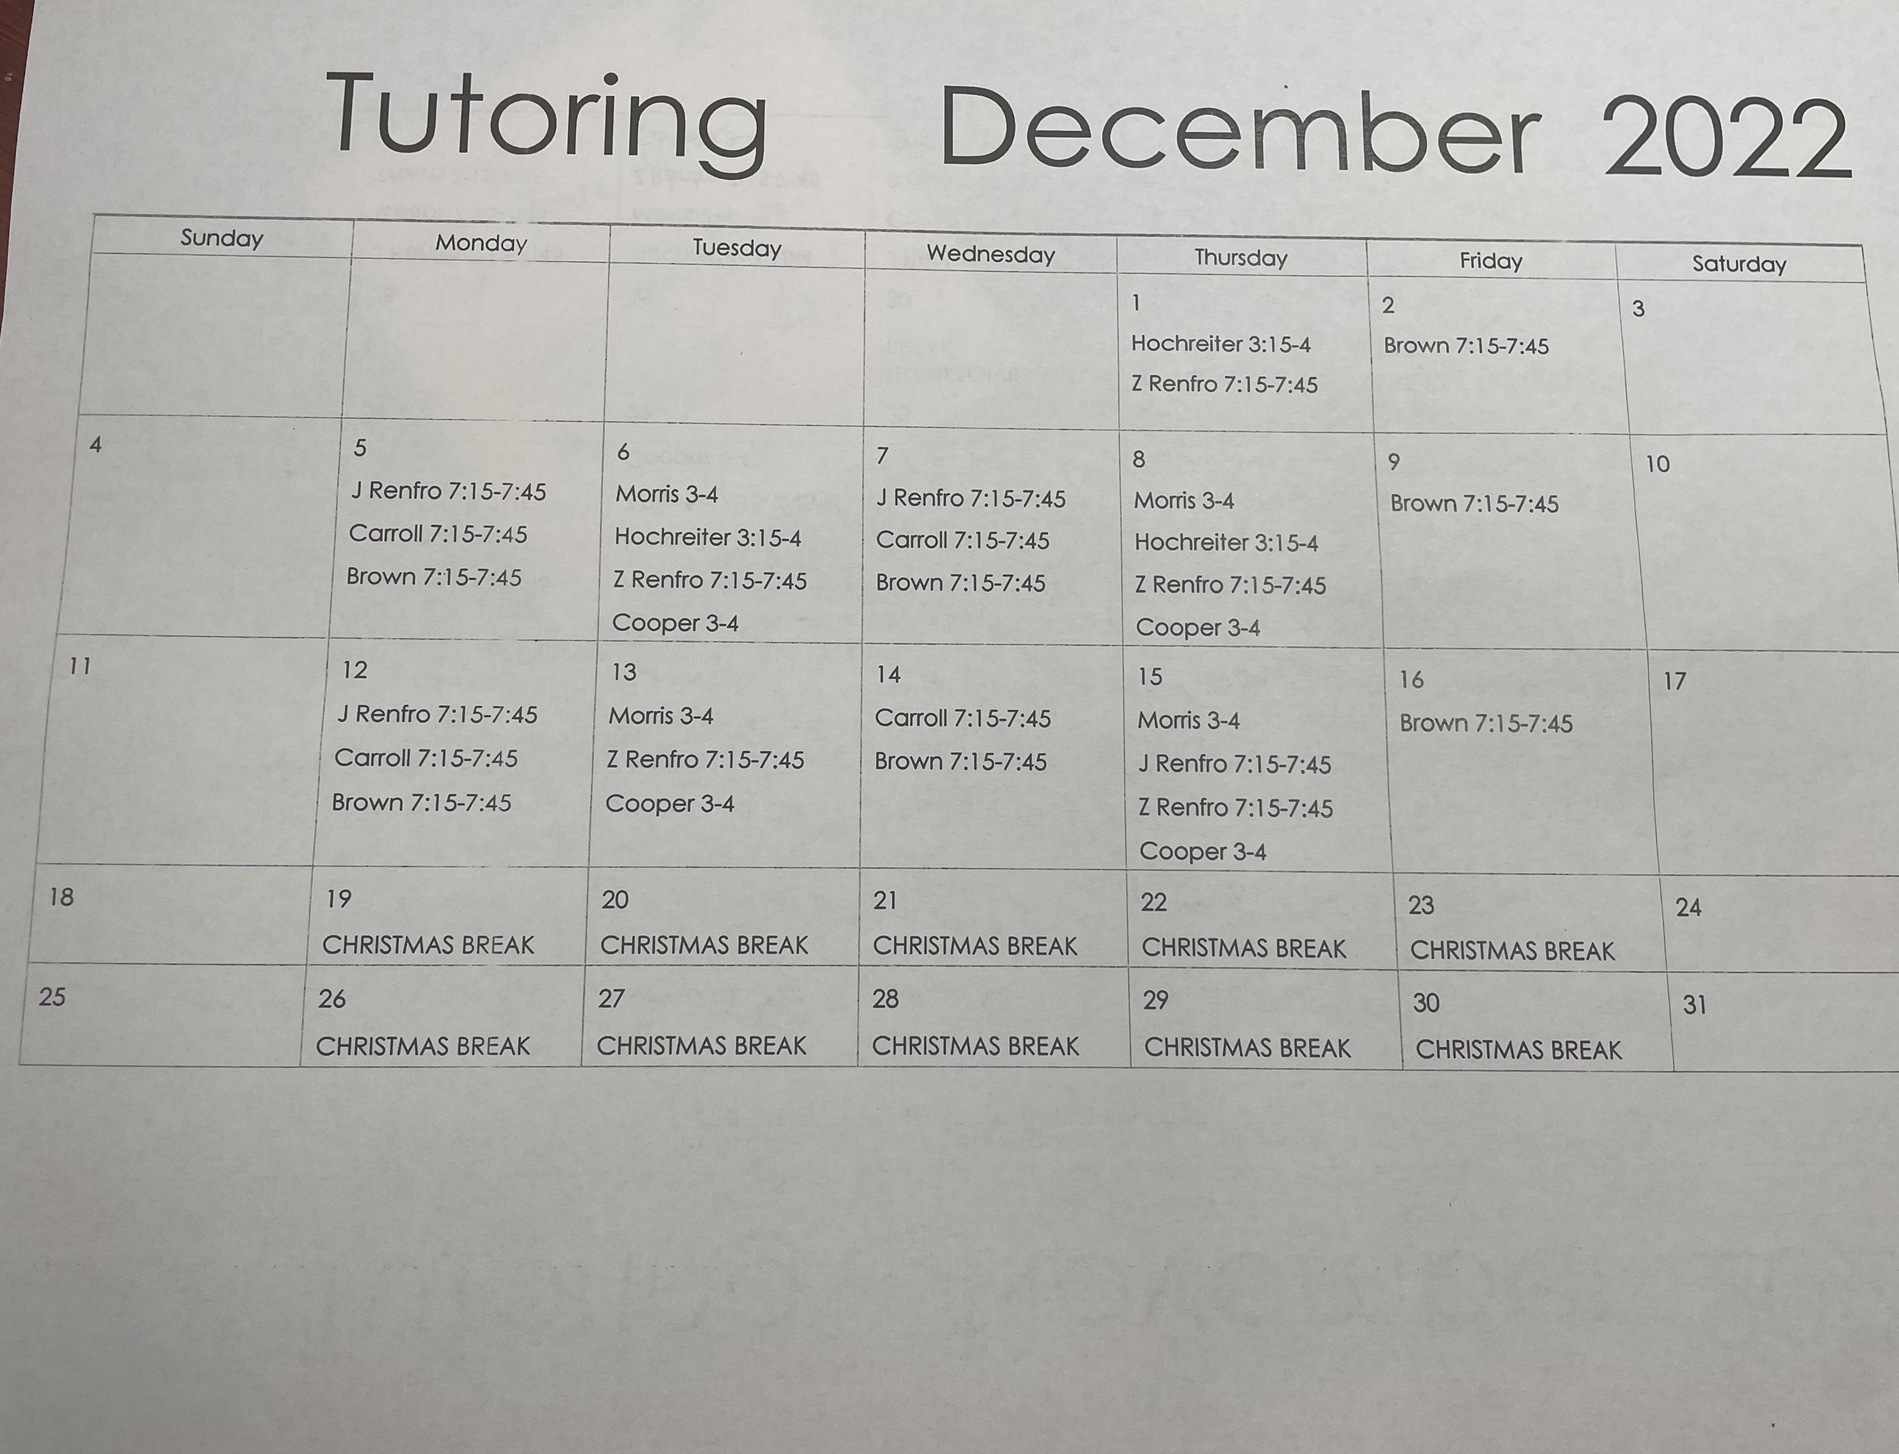 December tutoring